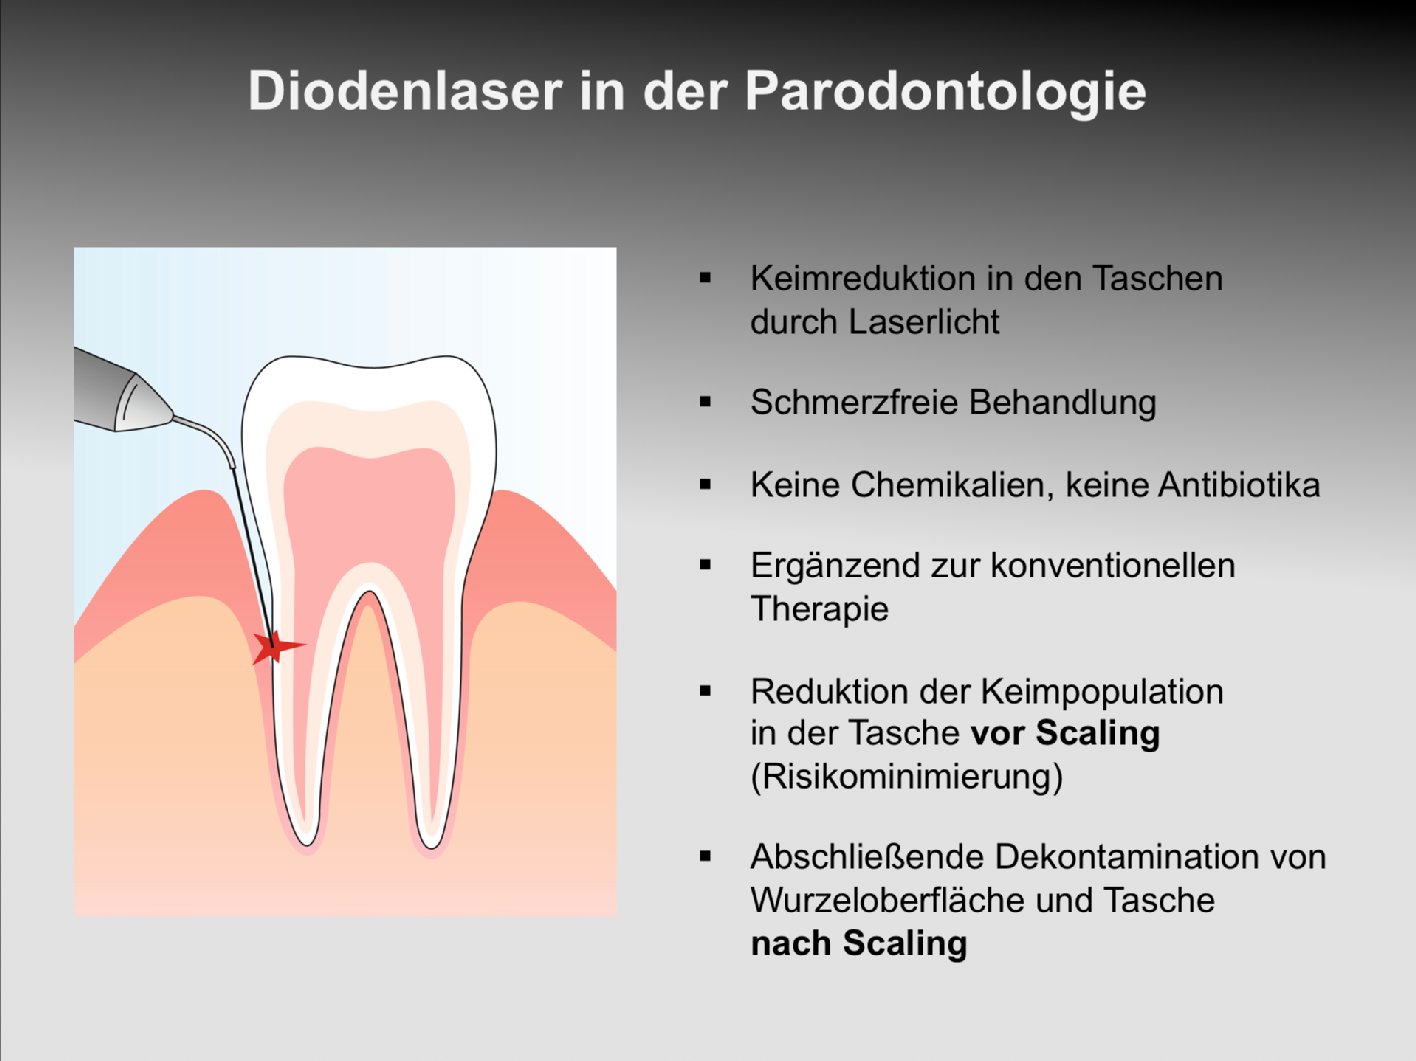 Erfahren Sie in unserer Praxis in Oberhausen-Rheinhausen mehr über den Einsatz eines Lasers in der Parodontologie.